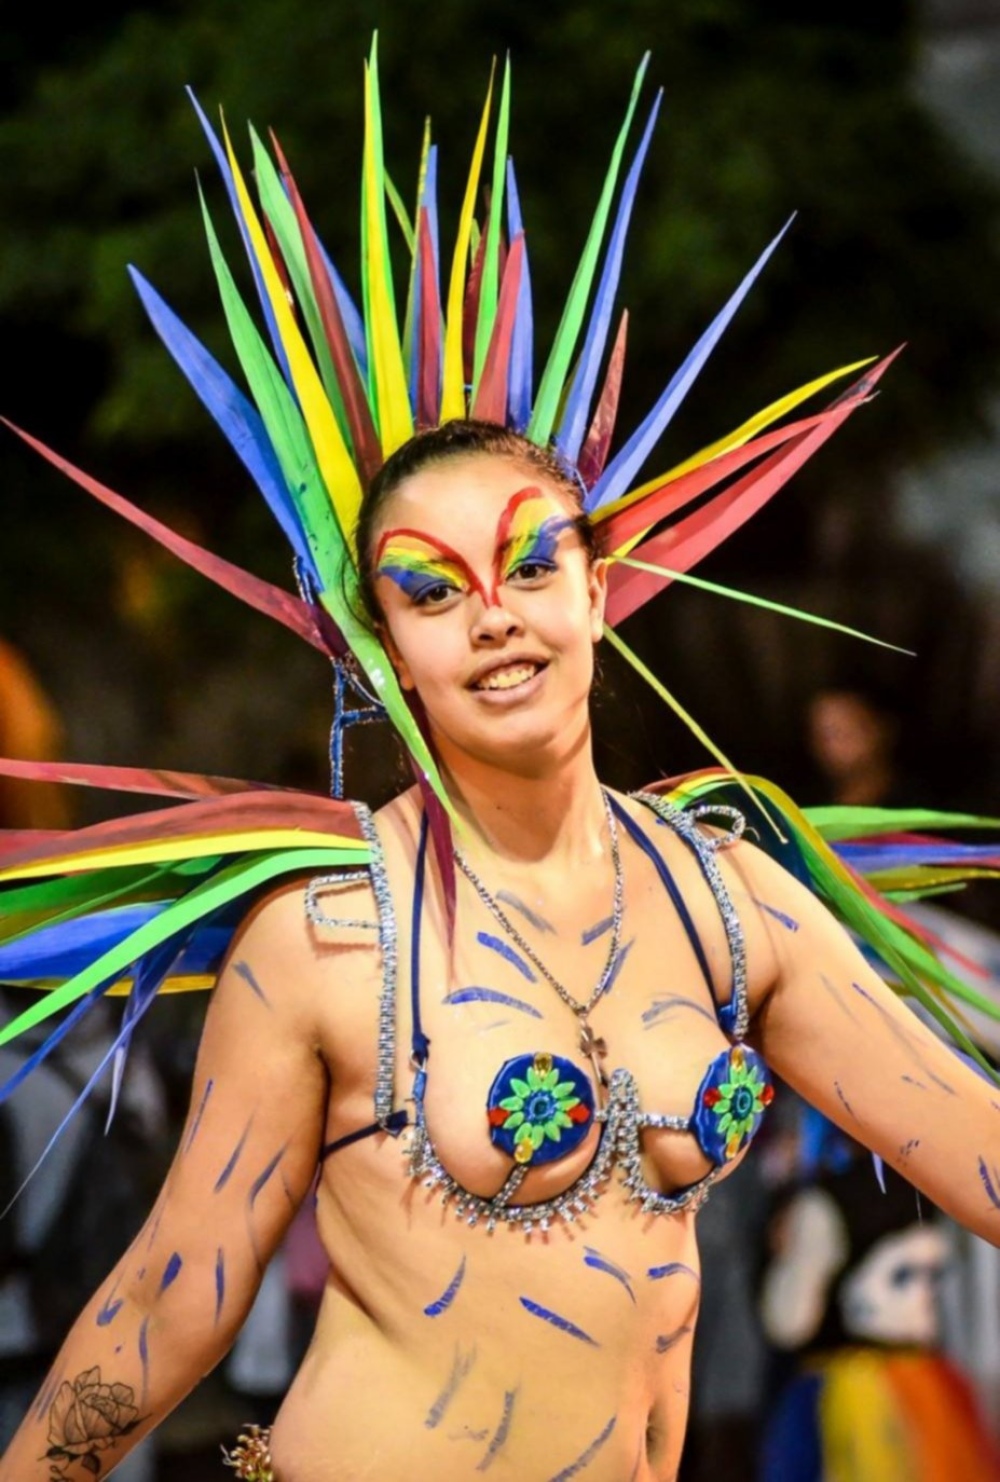 Fin de semana de Carnaval en el SudOeste, todas las opciones